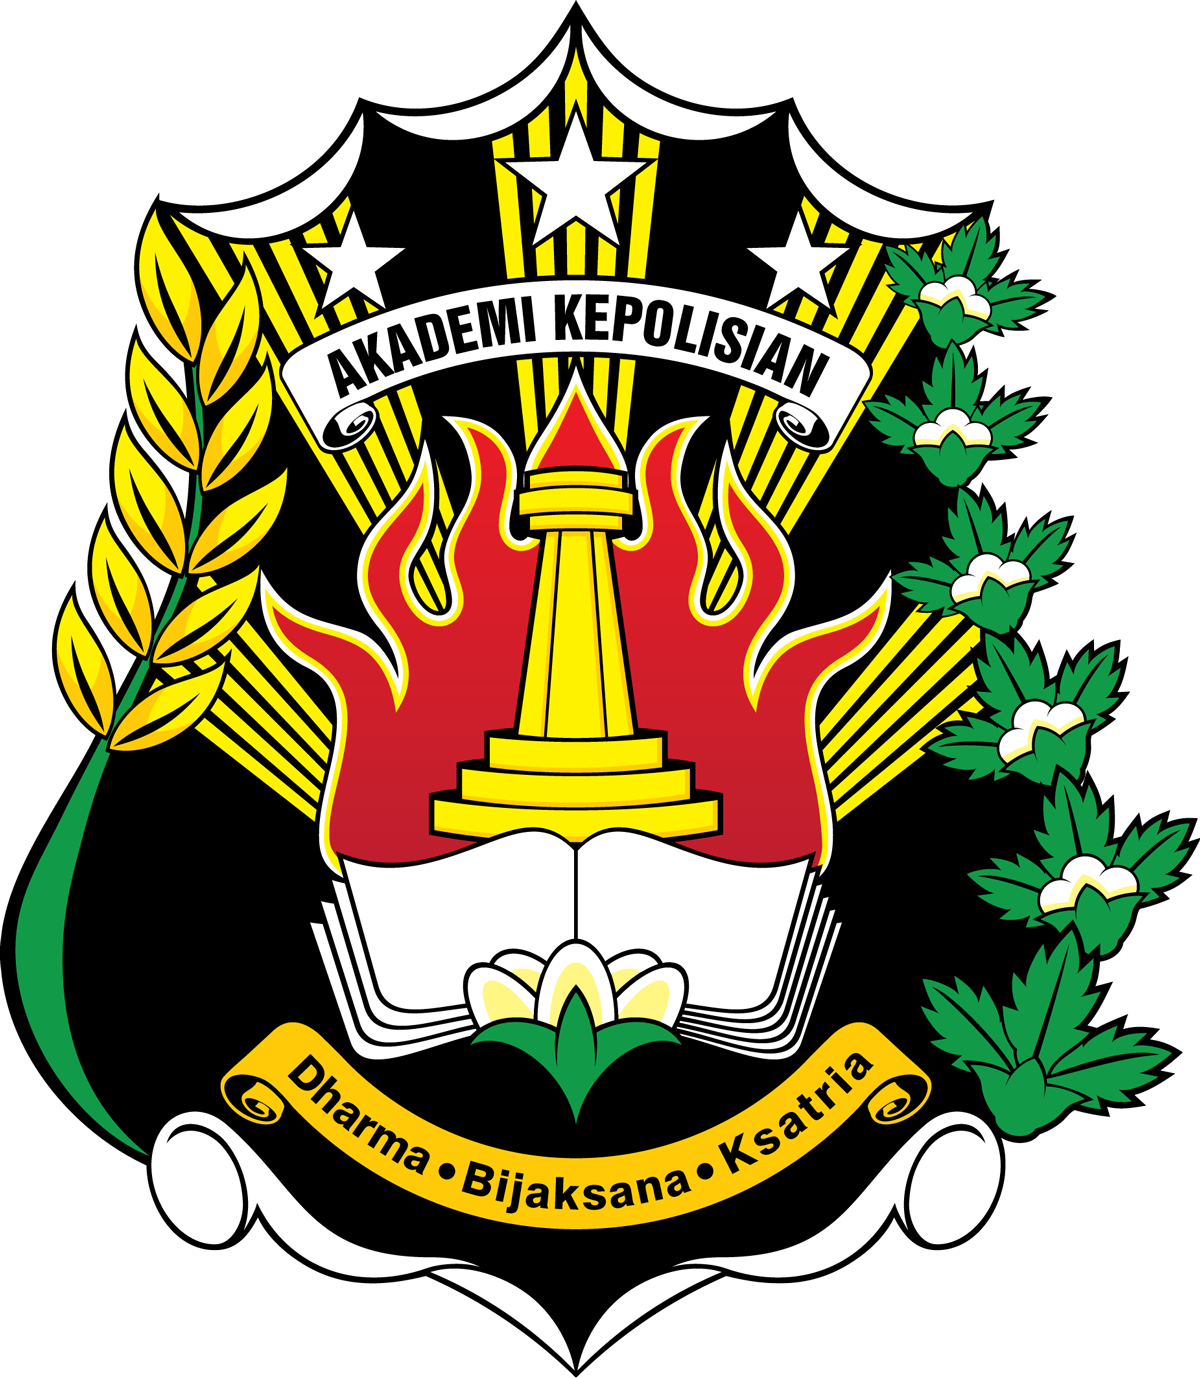 Logo Akademi Kepolisian Akpol 237 Design